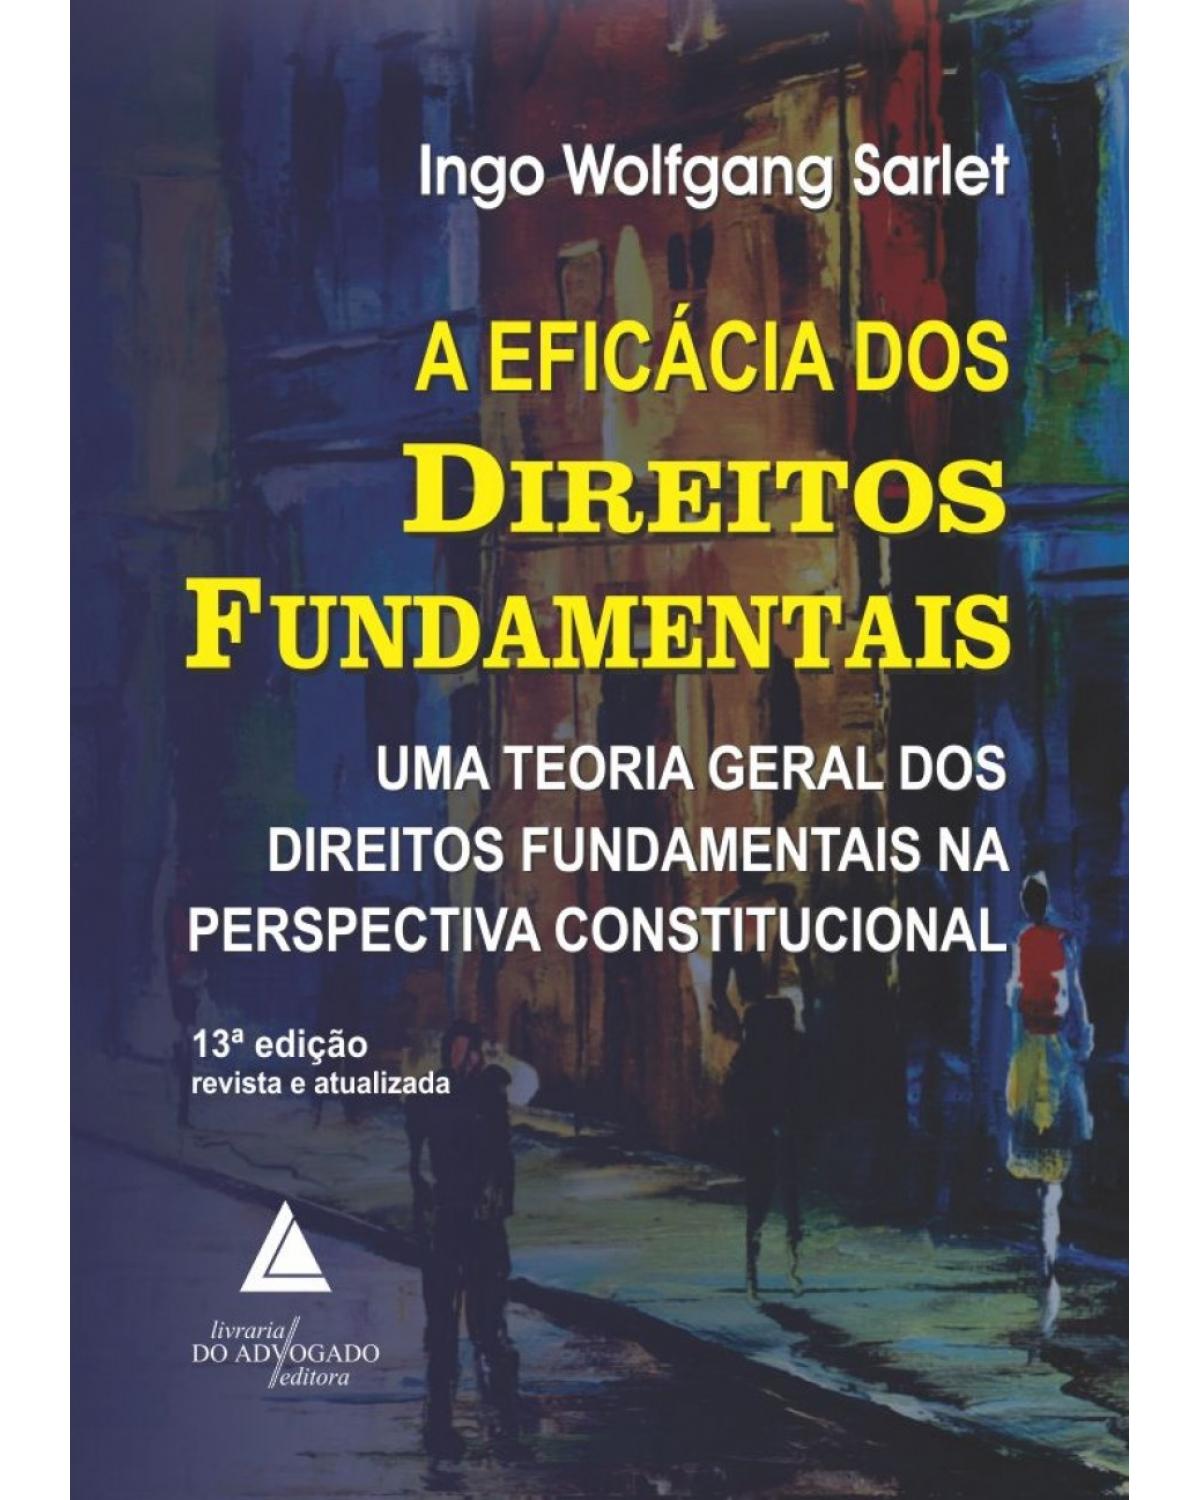 A eficácia dos direitos fundamentais: uma teoria geral dos direitos fundamentais na perspectiva constitucional - 13ª Edição | 2018